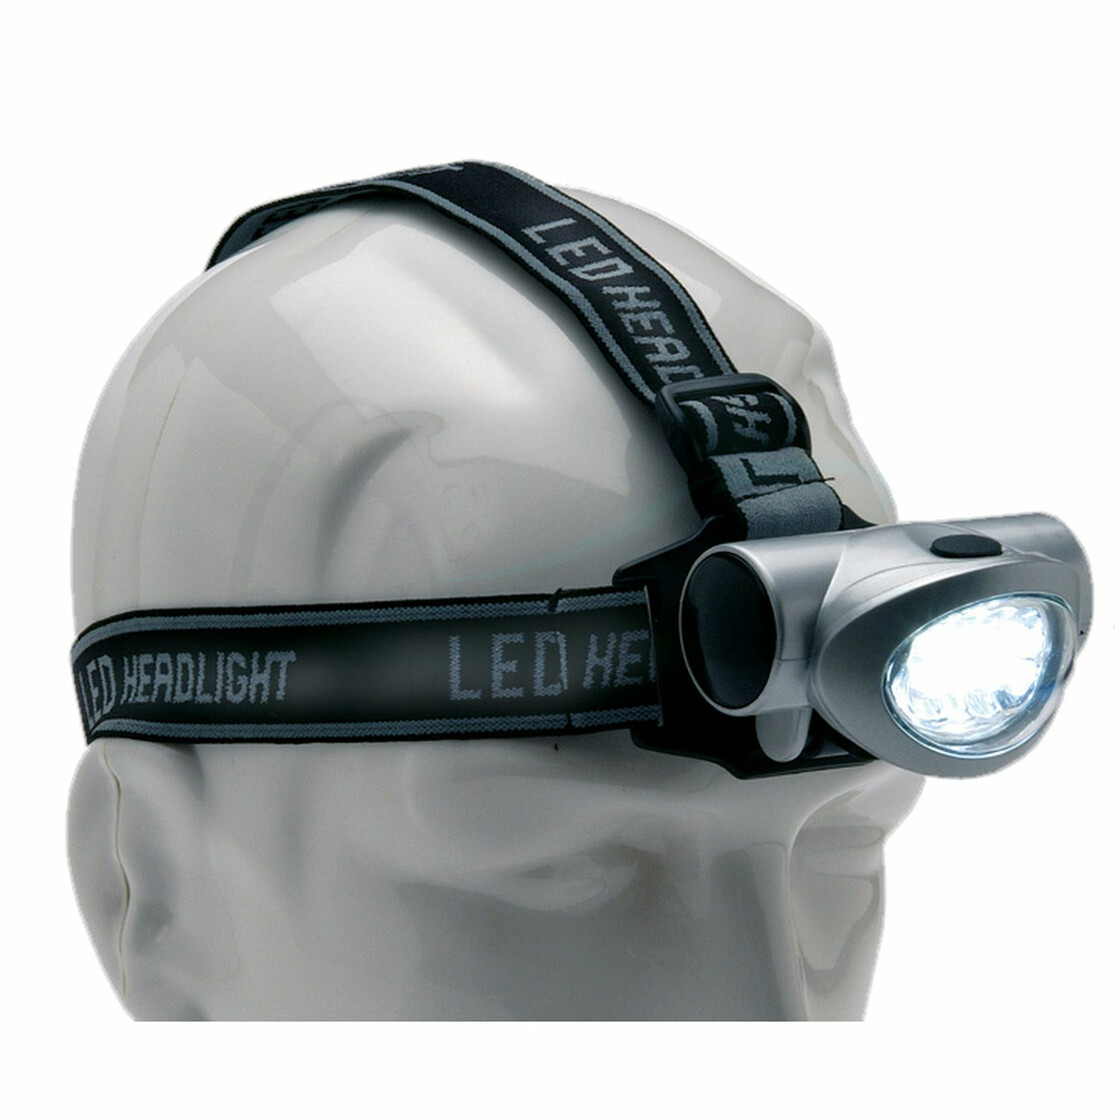 Behr Kopflampe Stirnlampe Angellampe Lampe 8 LED s LED-Lampe Angellampe 20083 